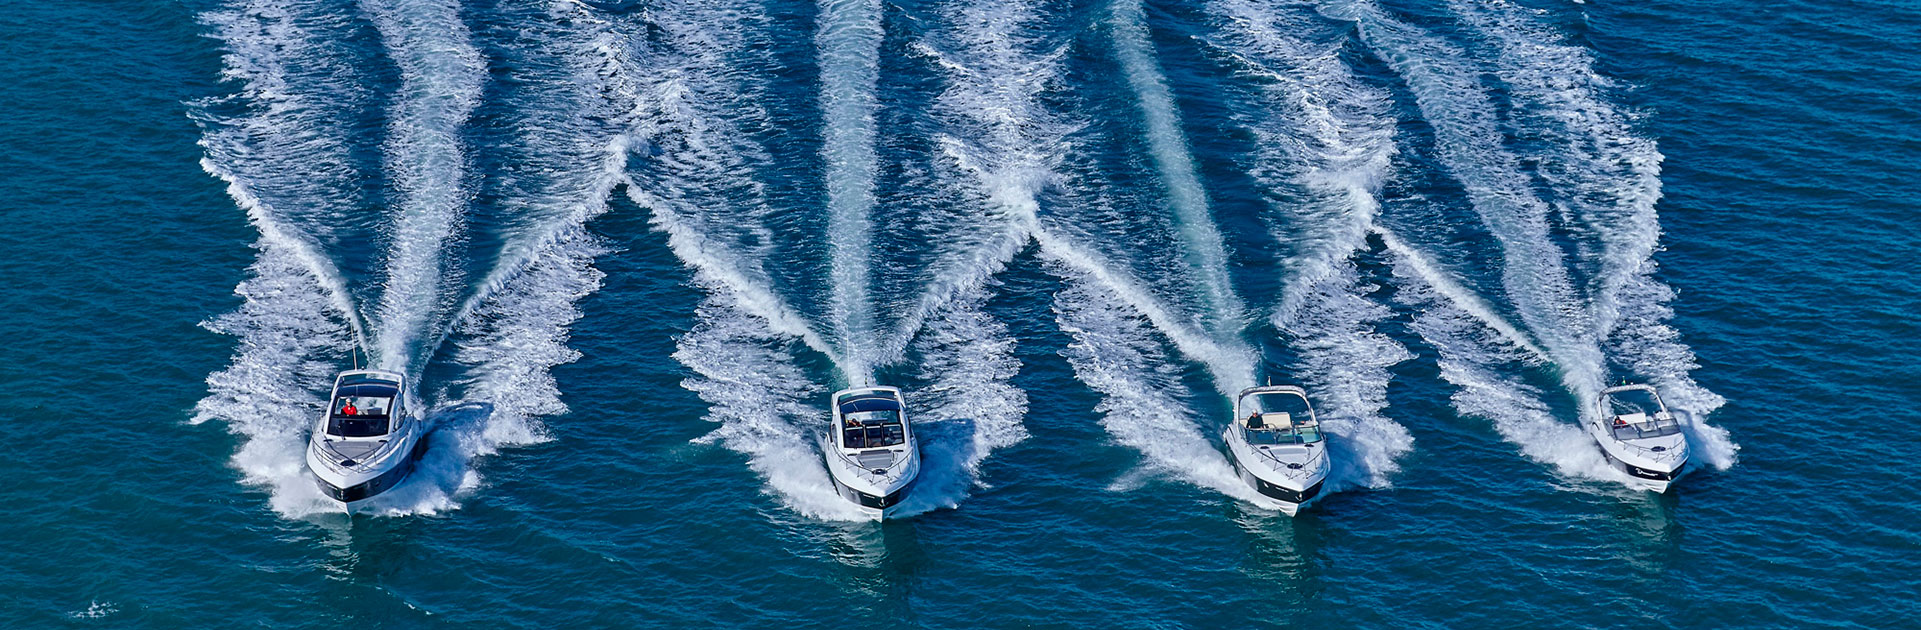 lancha a venda barcos novos estaleiro Schaefer yachts lanchas phantom e schaefer